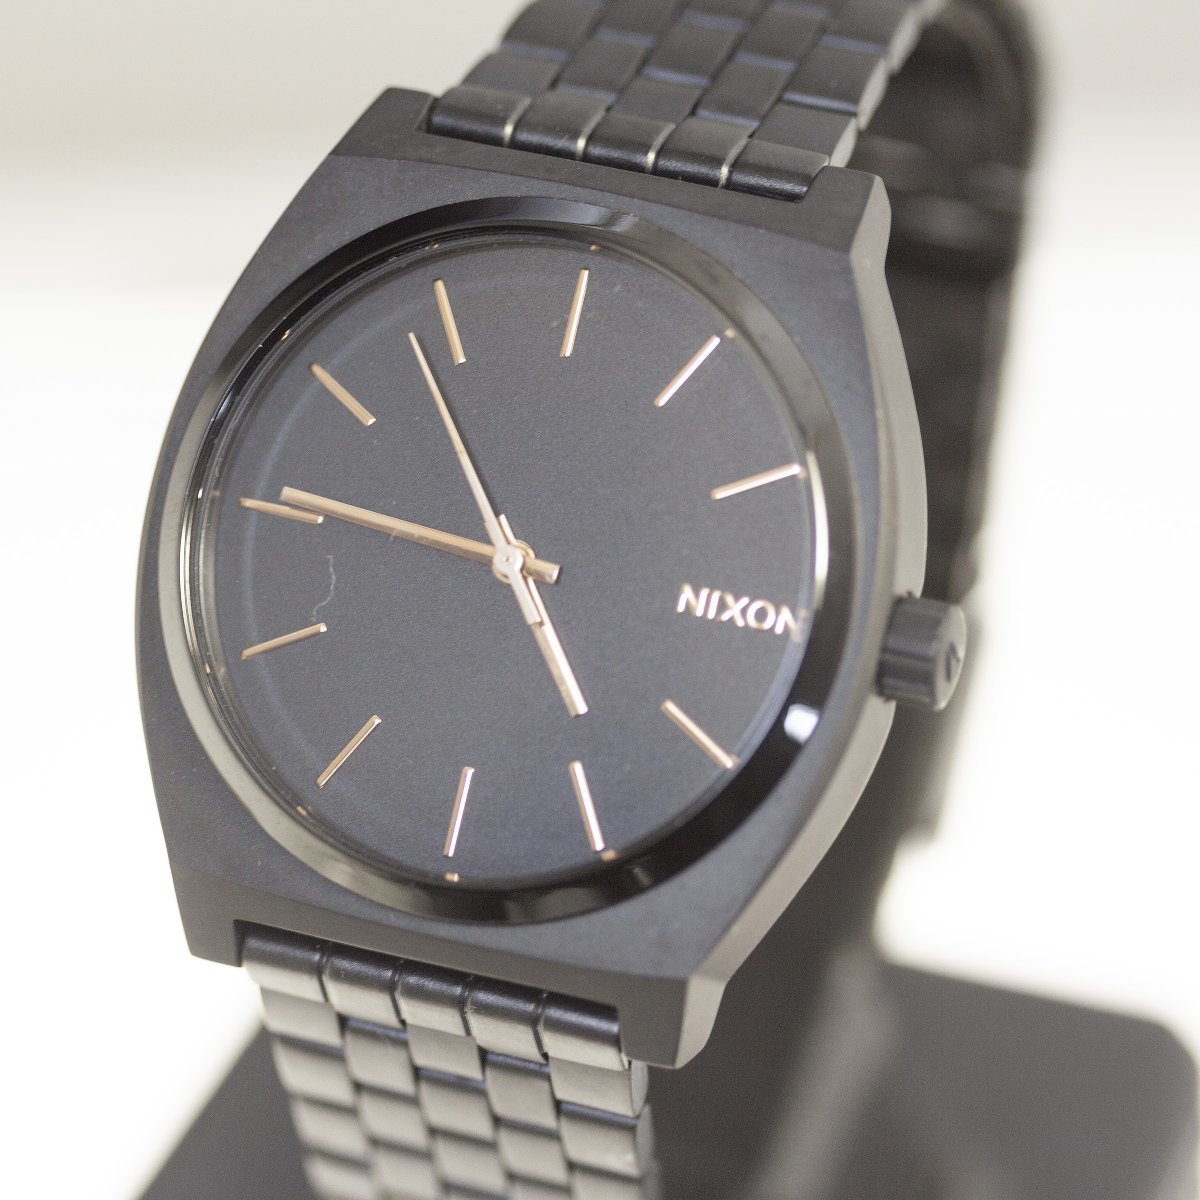  Nixon Mini maru Time Teller наручные часы нержавеющая сталь NIXON MINIMAL THE TIME TELLER кварц б/у рабочий товар 